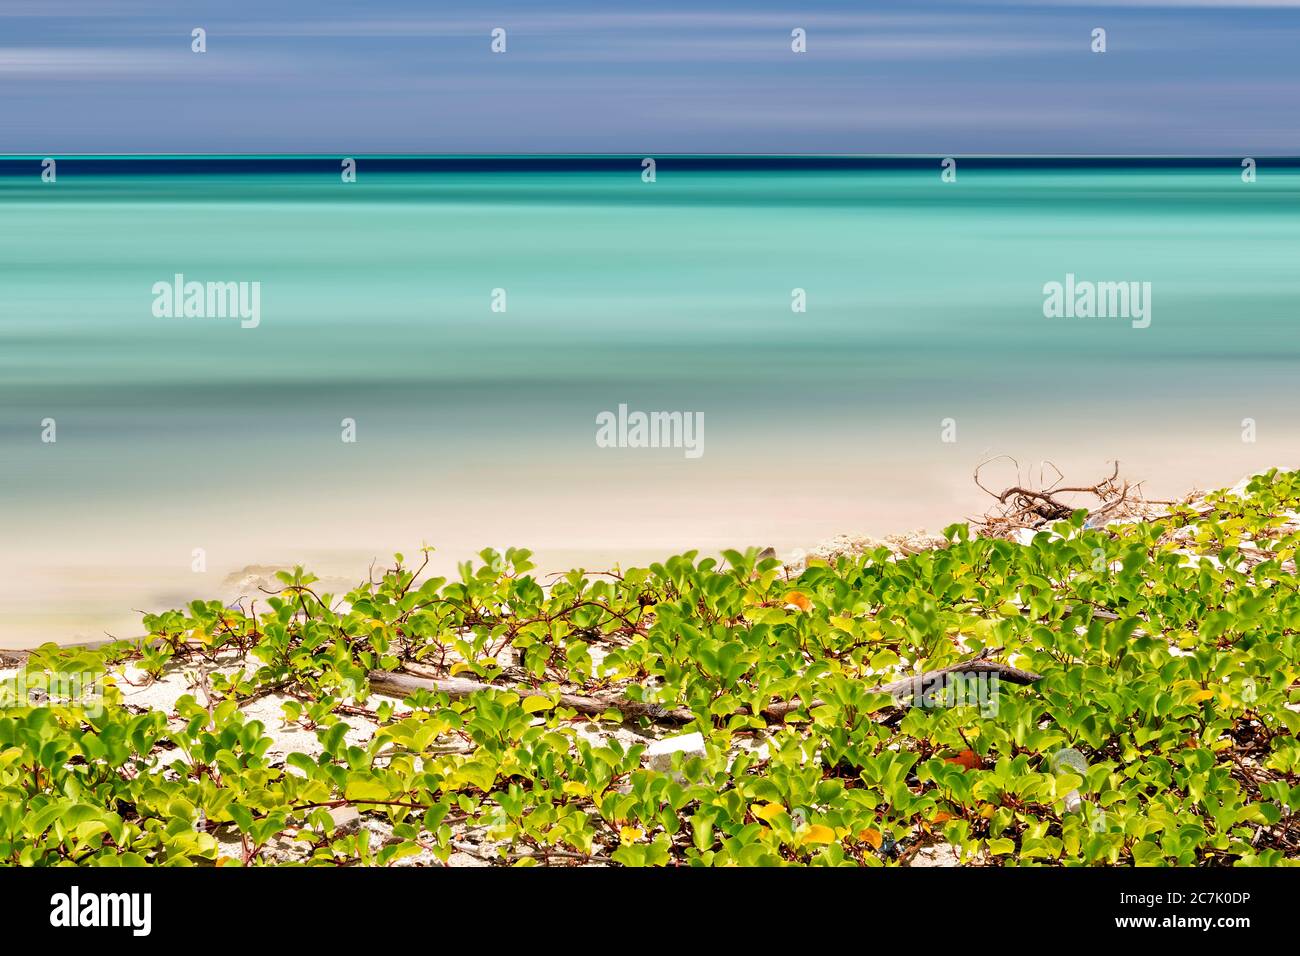 Salida del sol en la playa paraiso isla Gulhi, Oceano indica, Maldivas Foto Stock